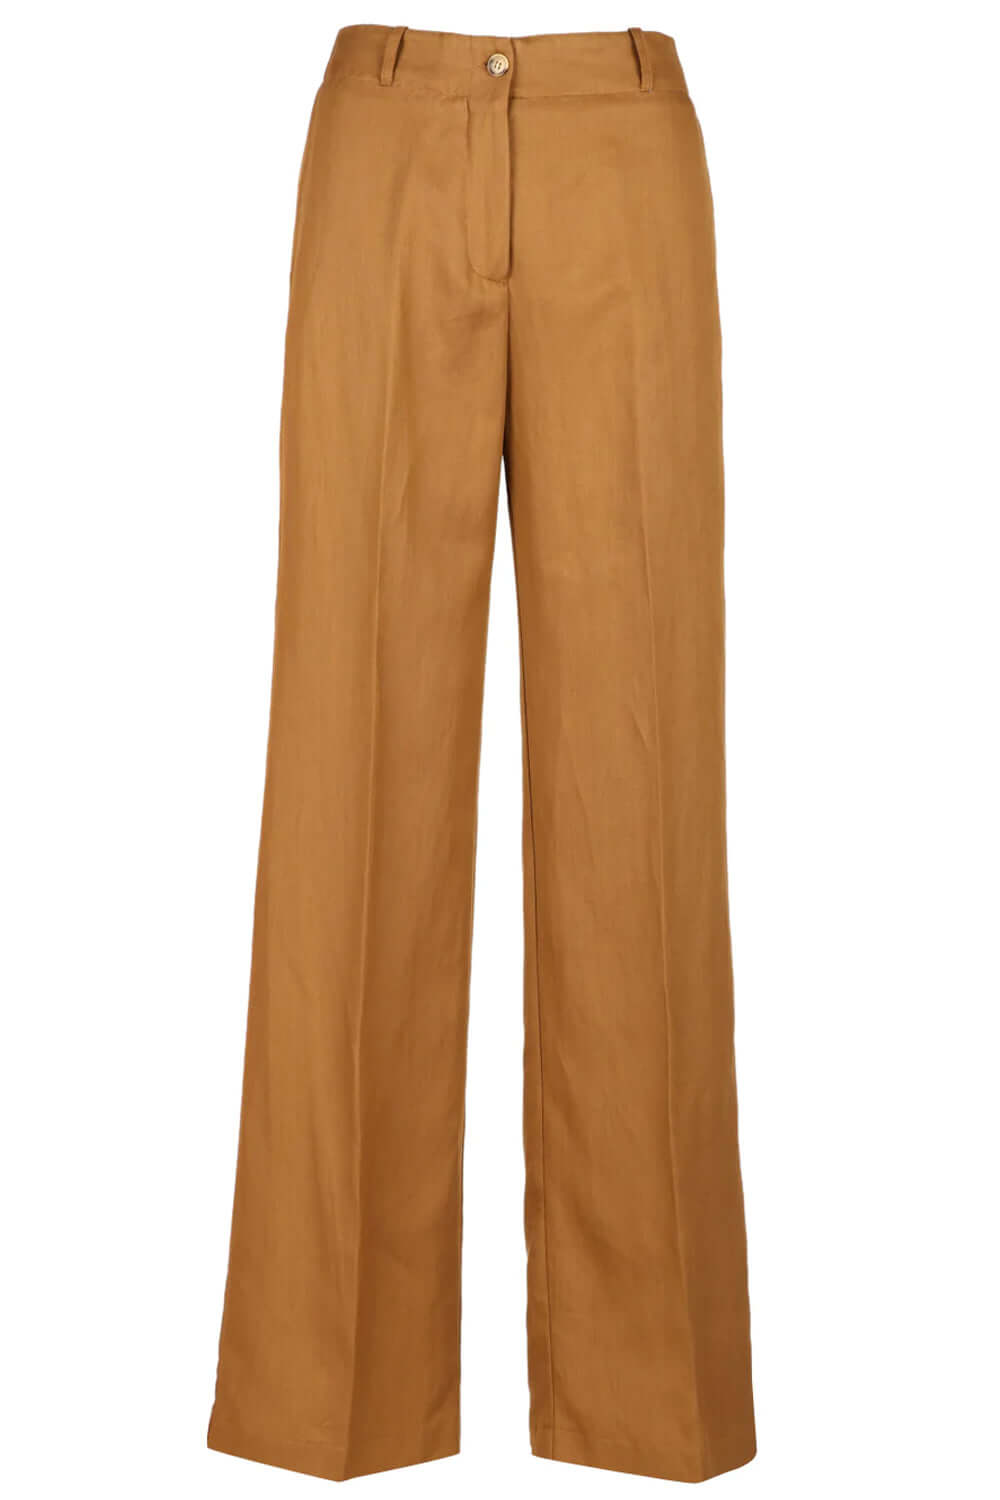 Image of Pantalone in lino e cotone ampio - SUOLI